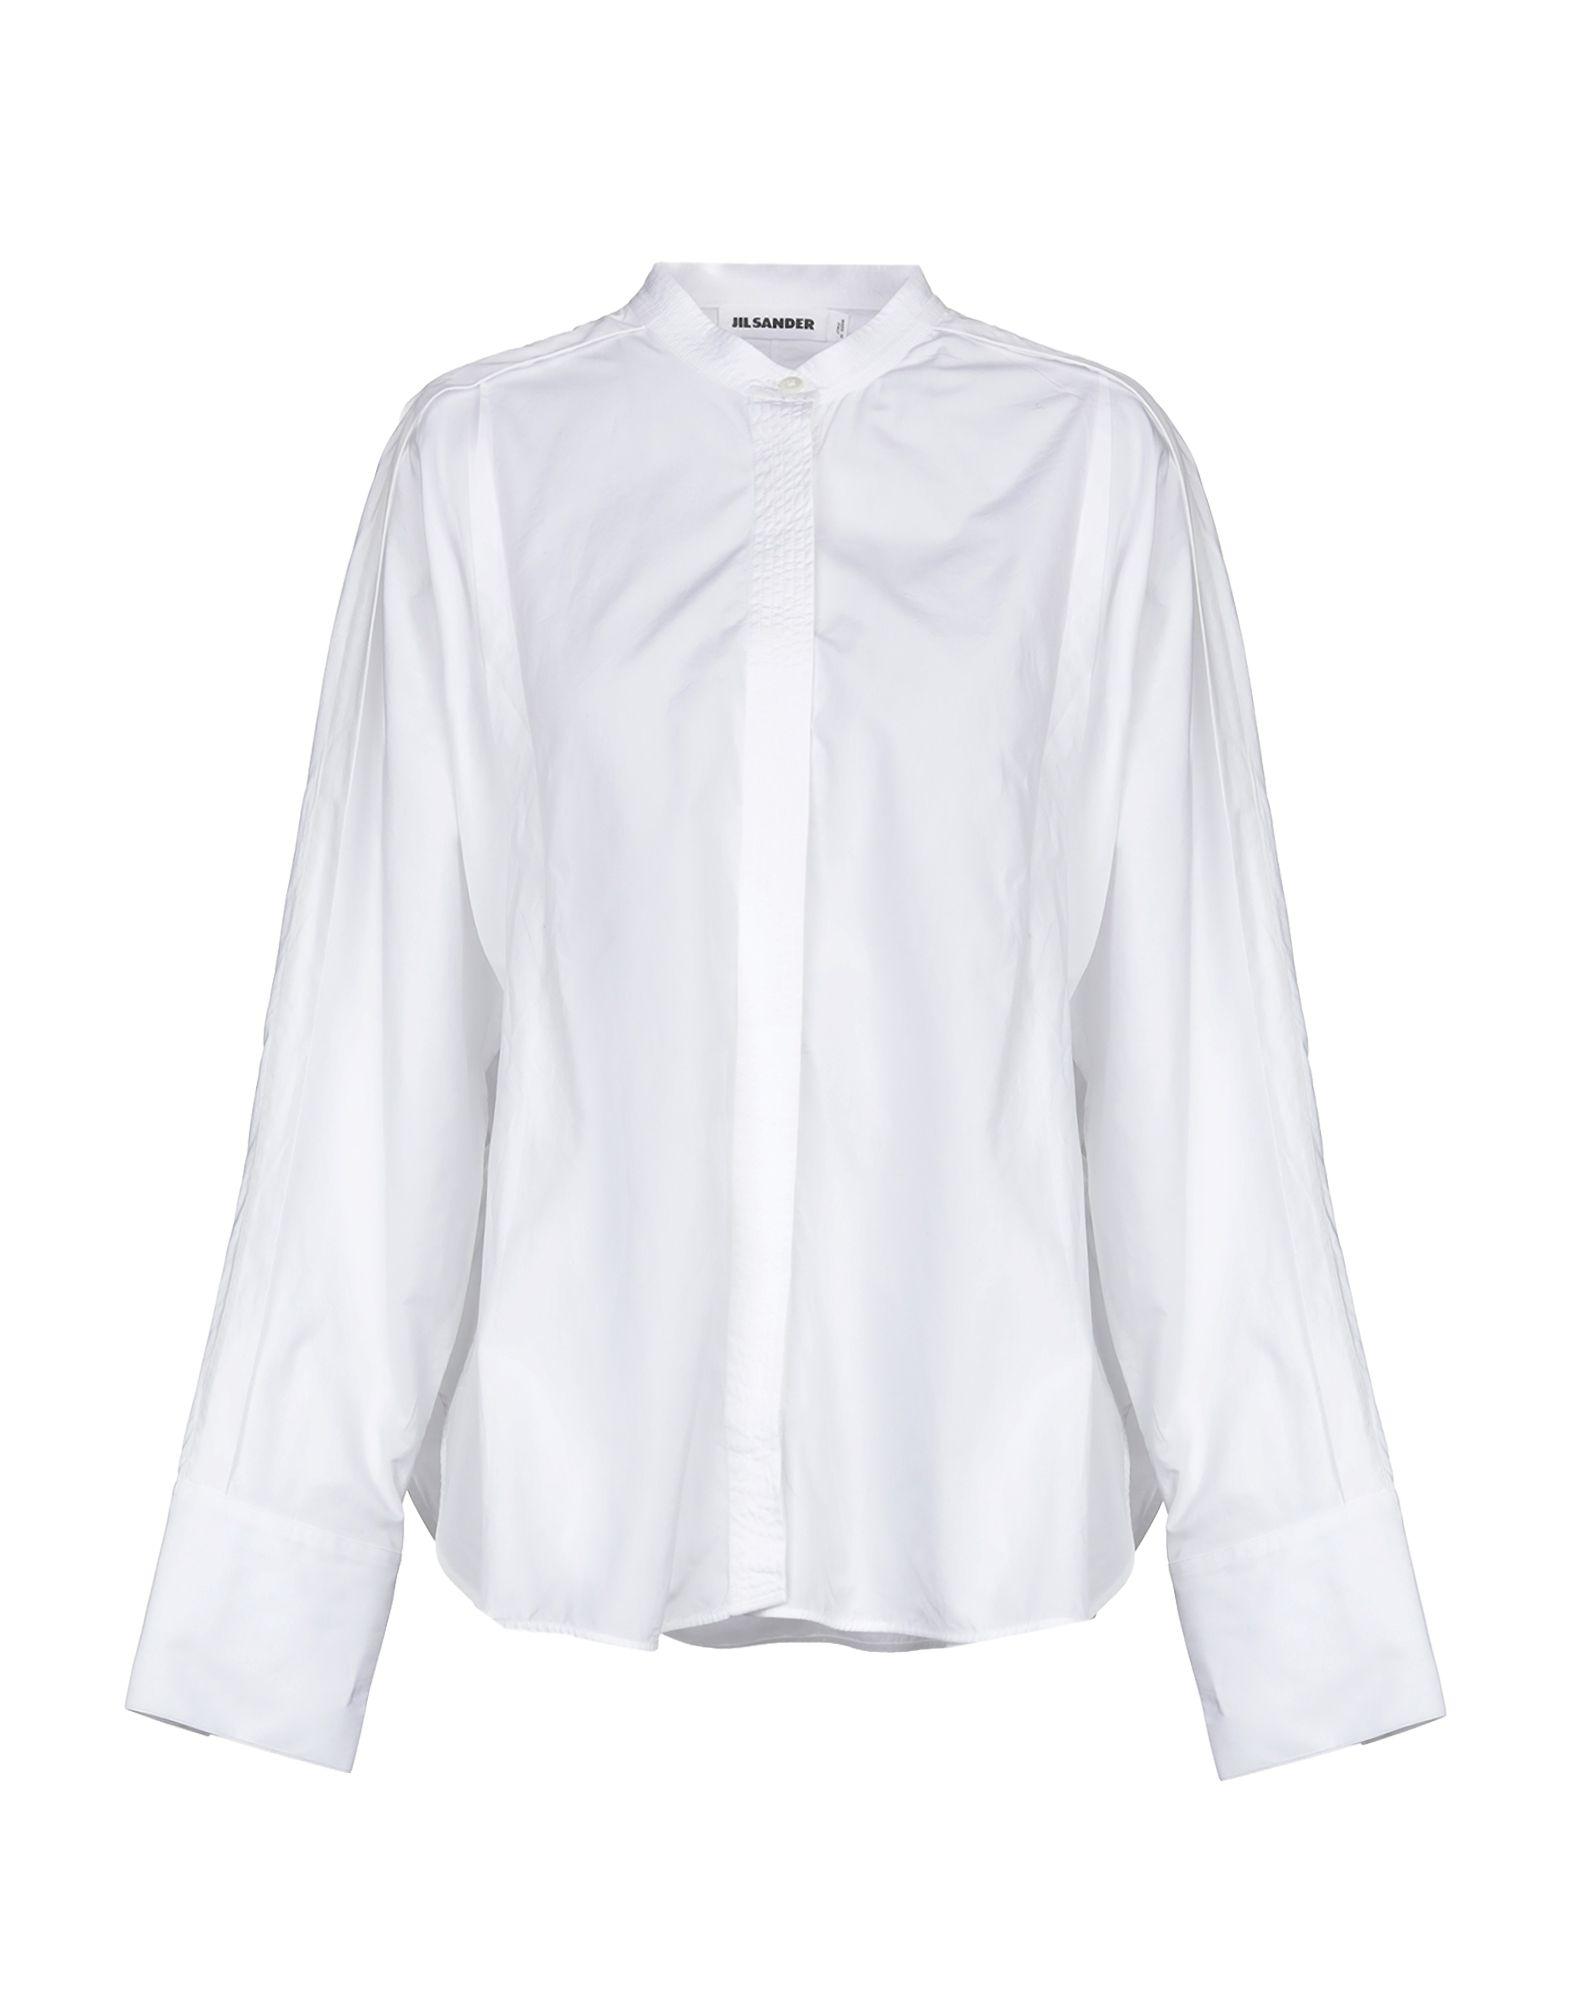 Jil Sander Shirt in White - Lyst